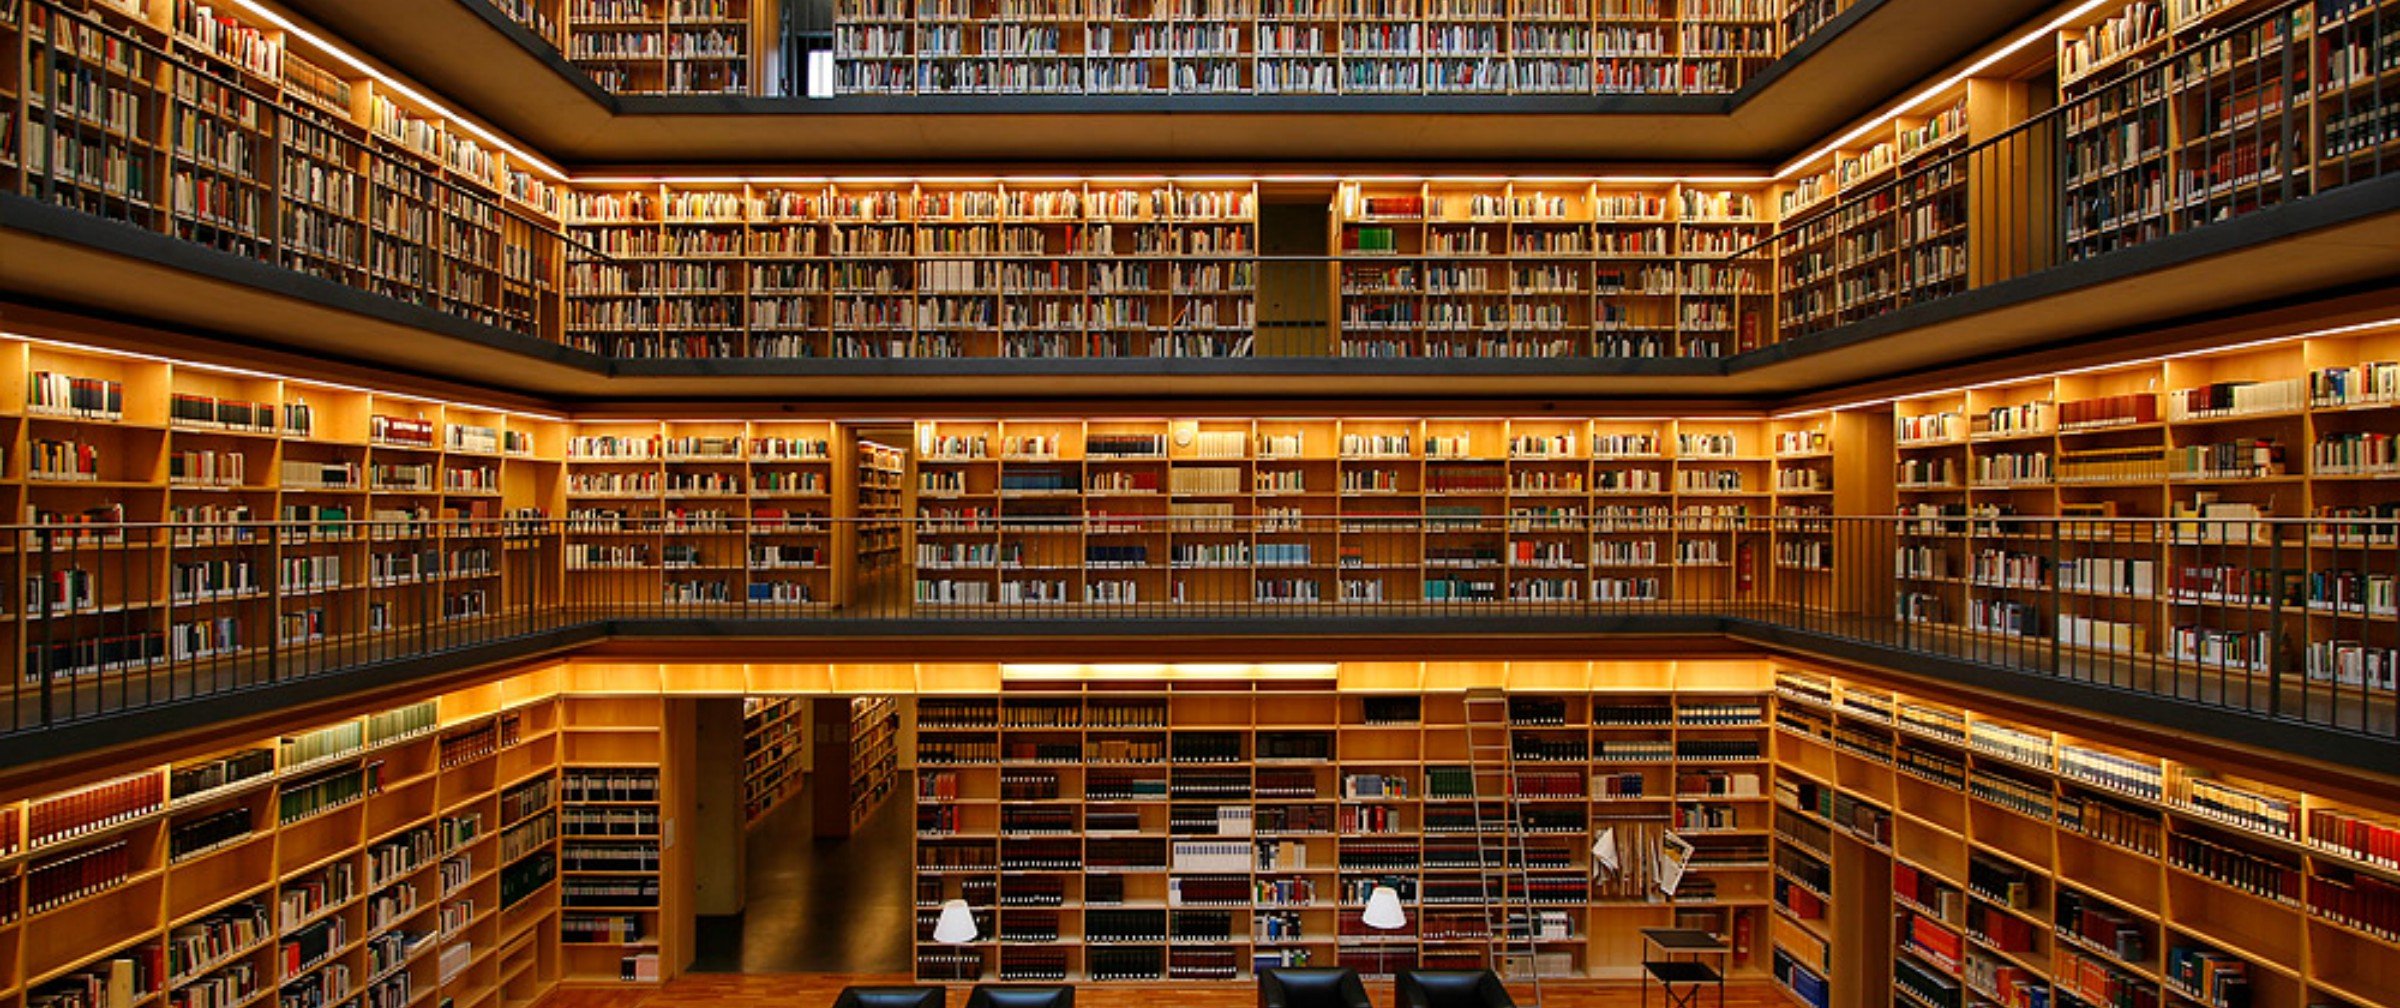 Media library. 19-Ярусное книгохранилище РГБ. Библиотека Phillips Exeter. Красивая библиотека. Большая библиотека.